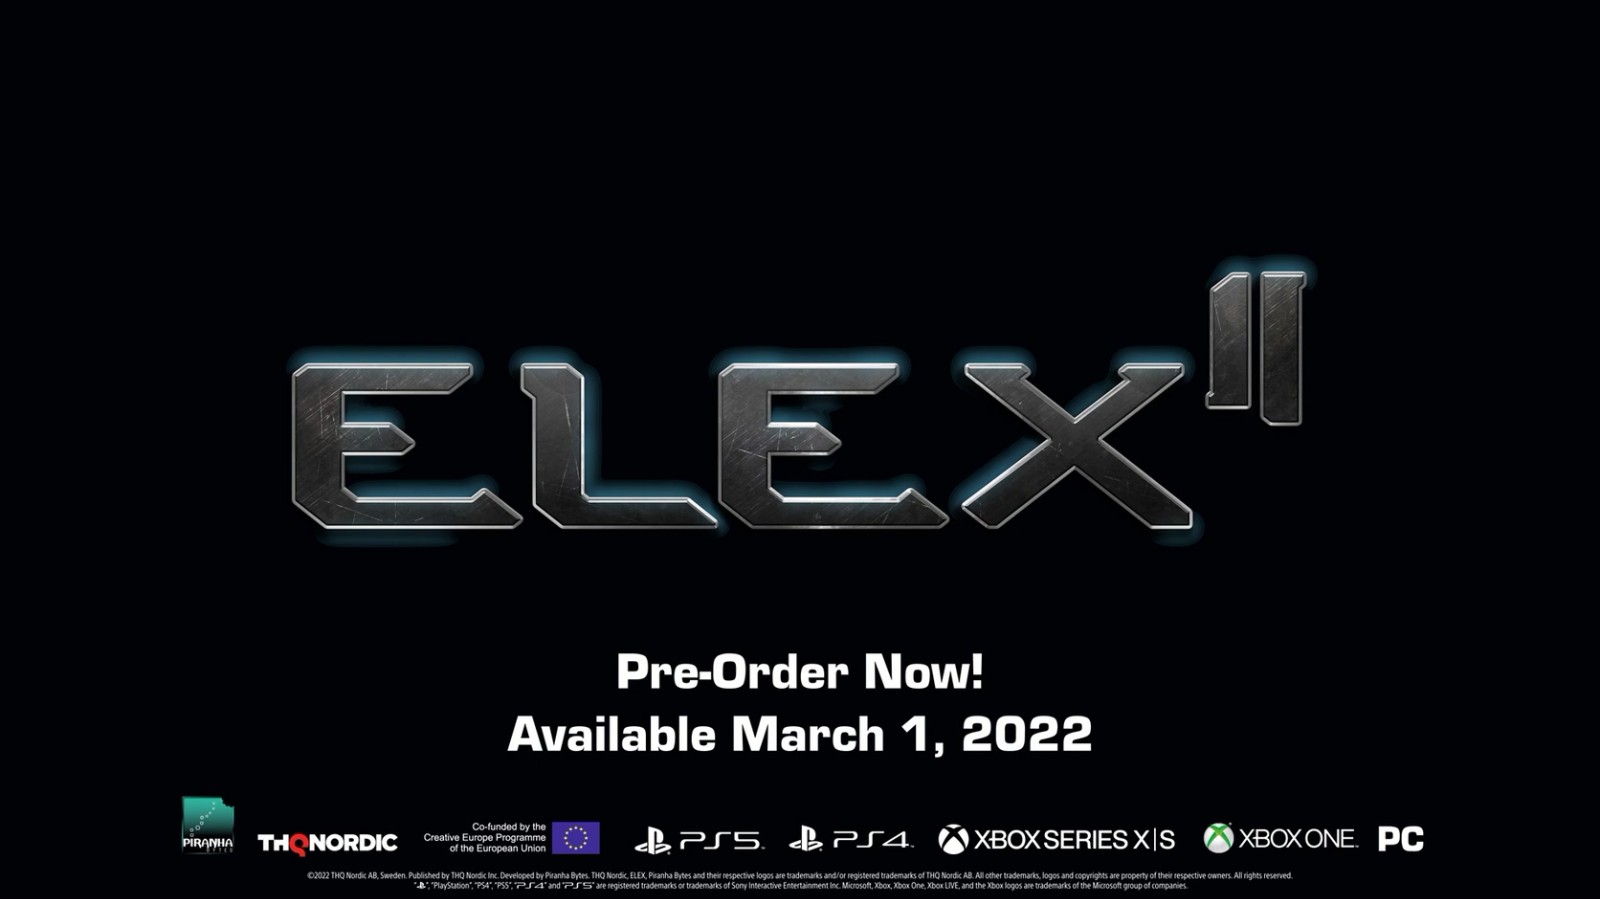 開放世界單機RPG《ELEX II》新預告 3月1日發售